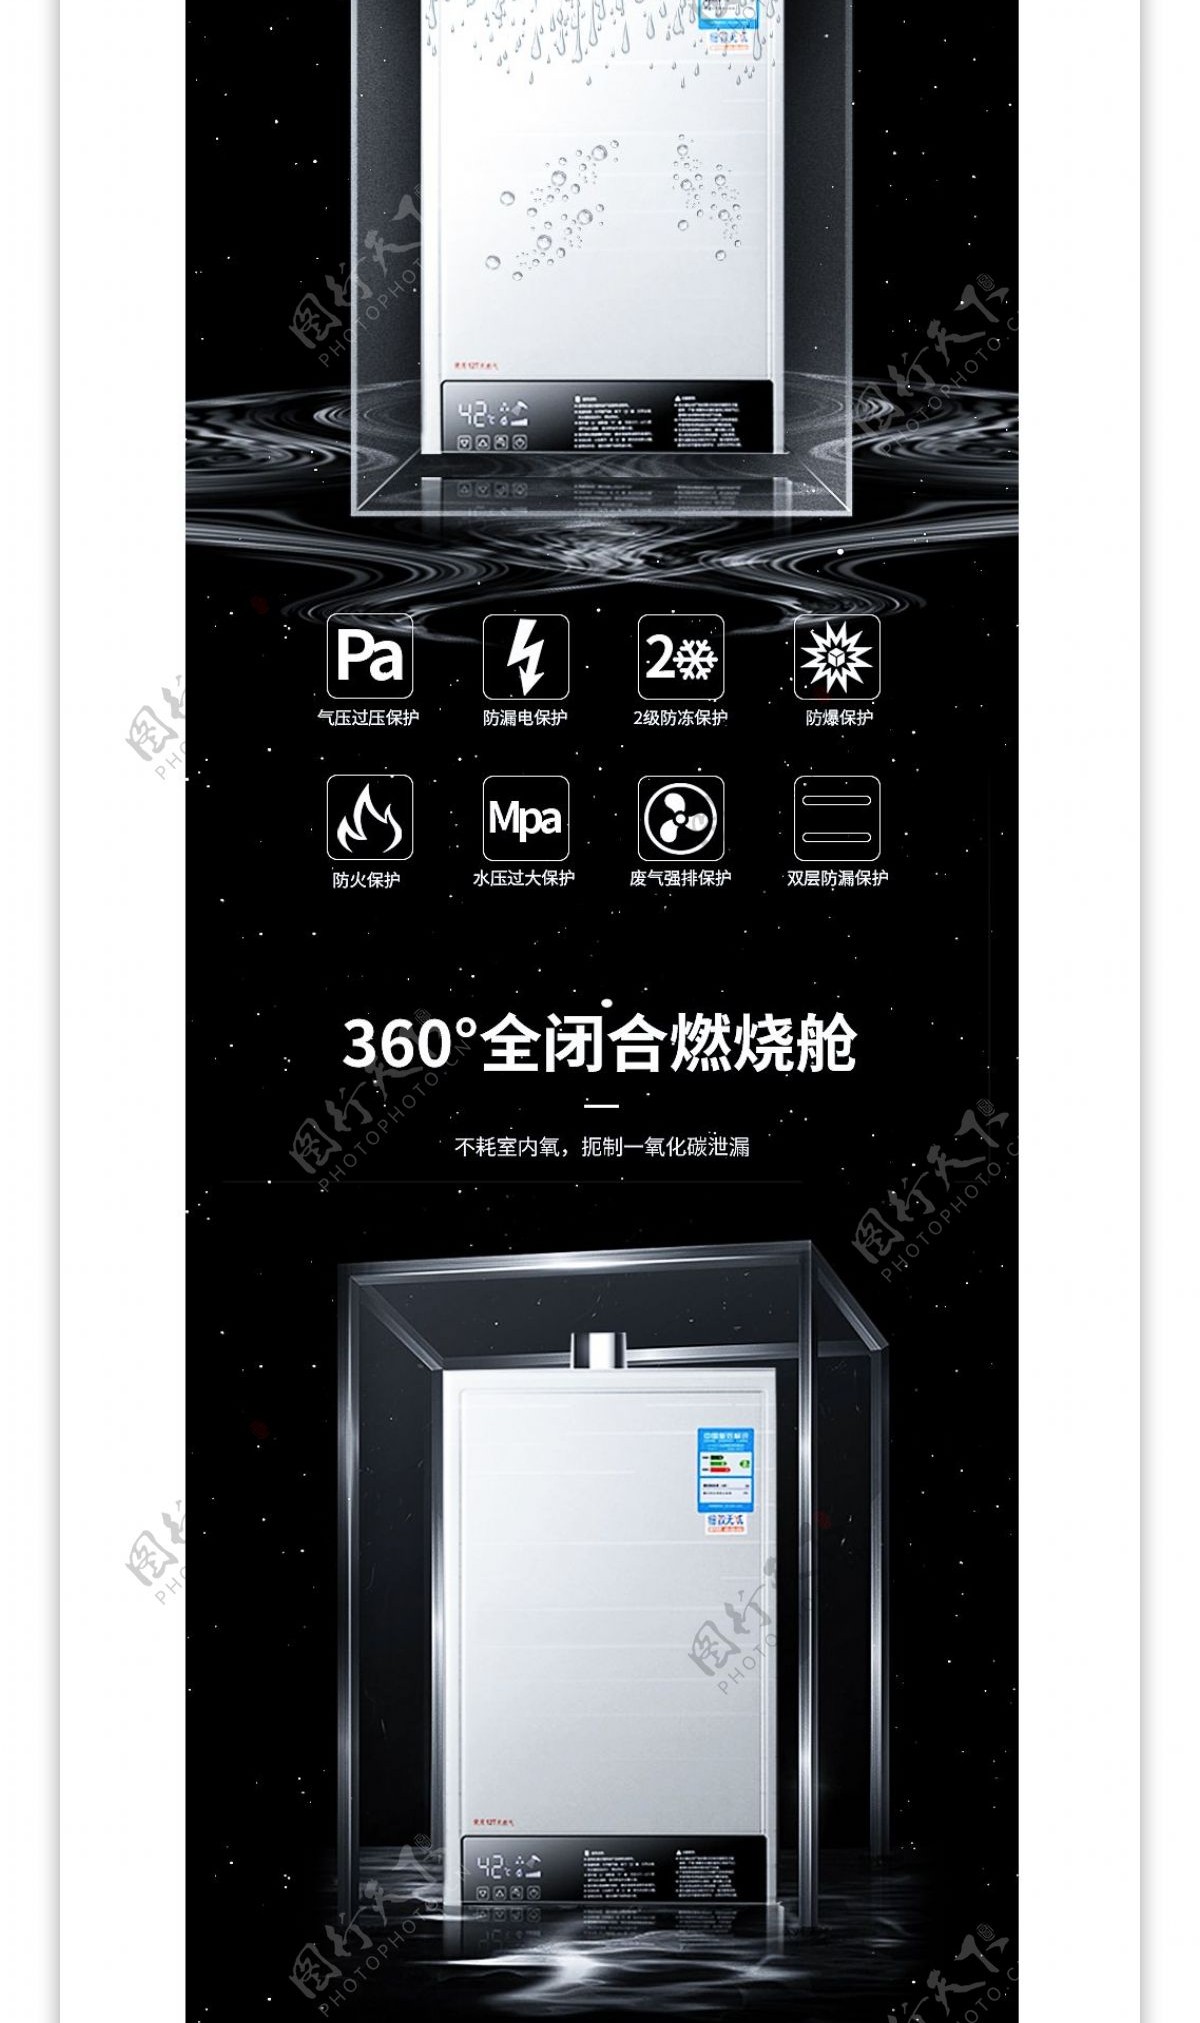 电商燃气浴室洗护热水器详情页模板